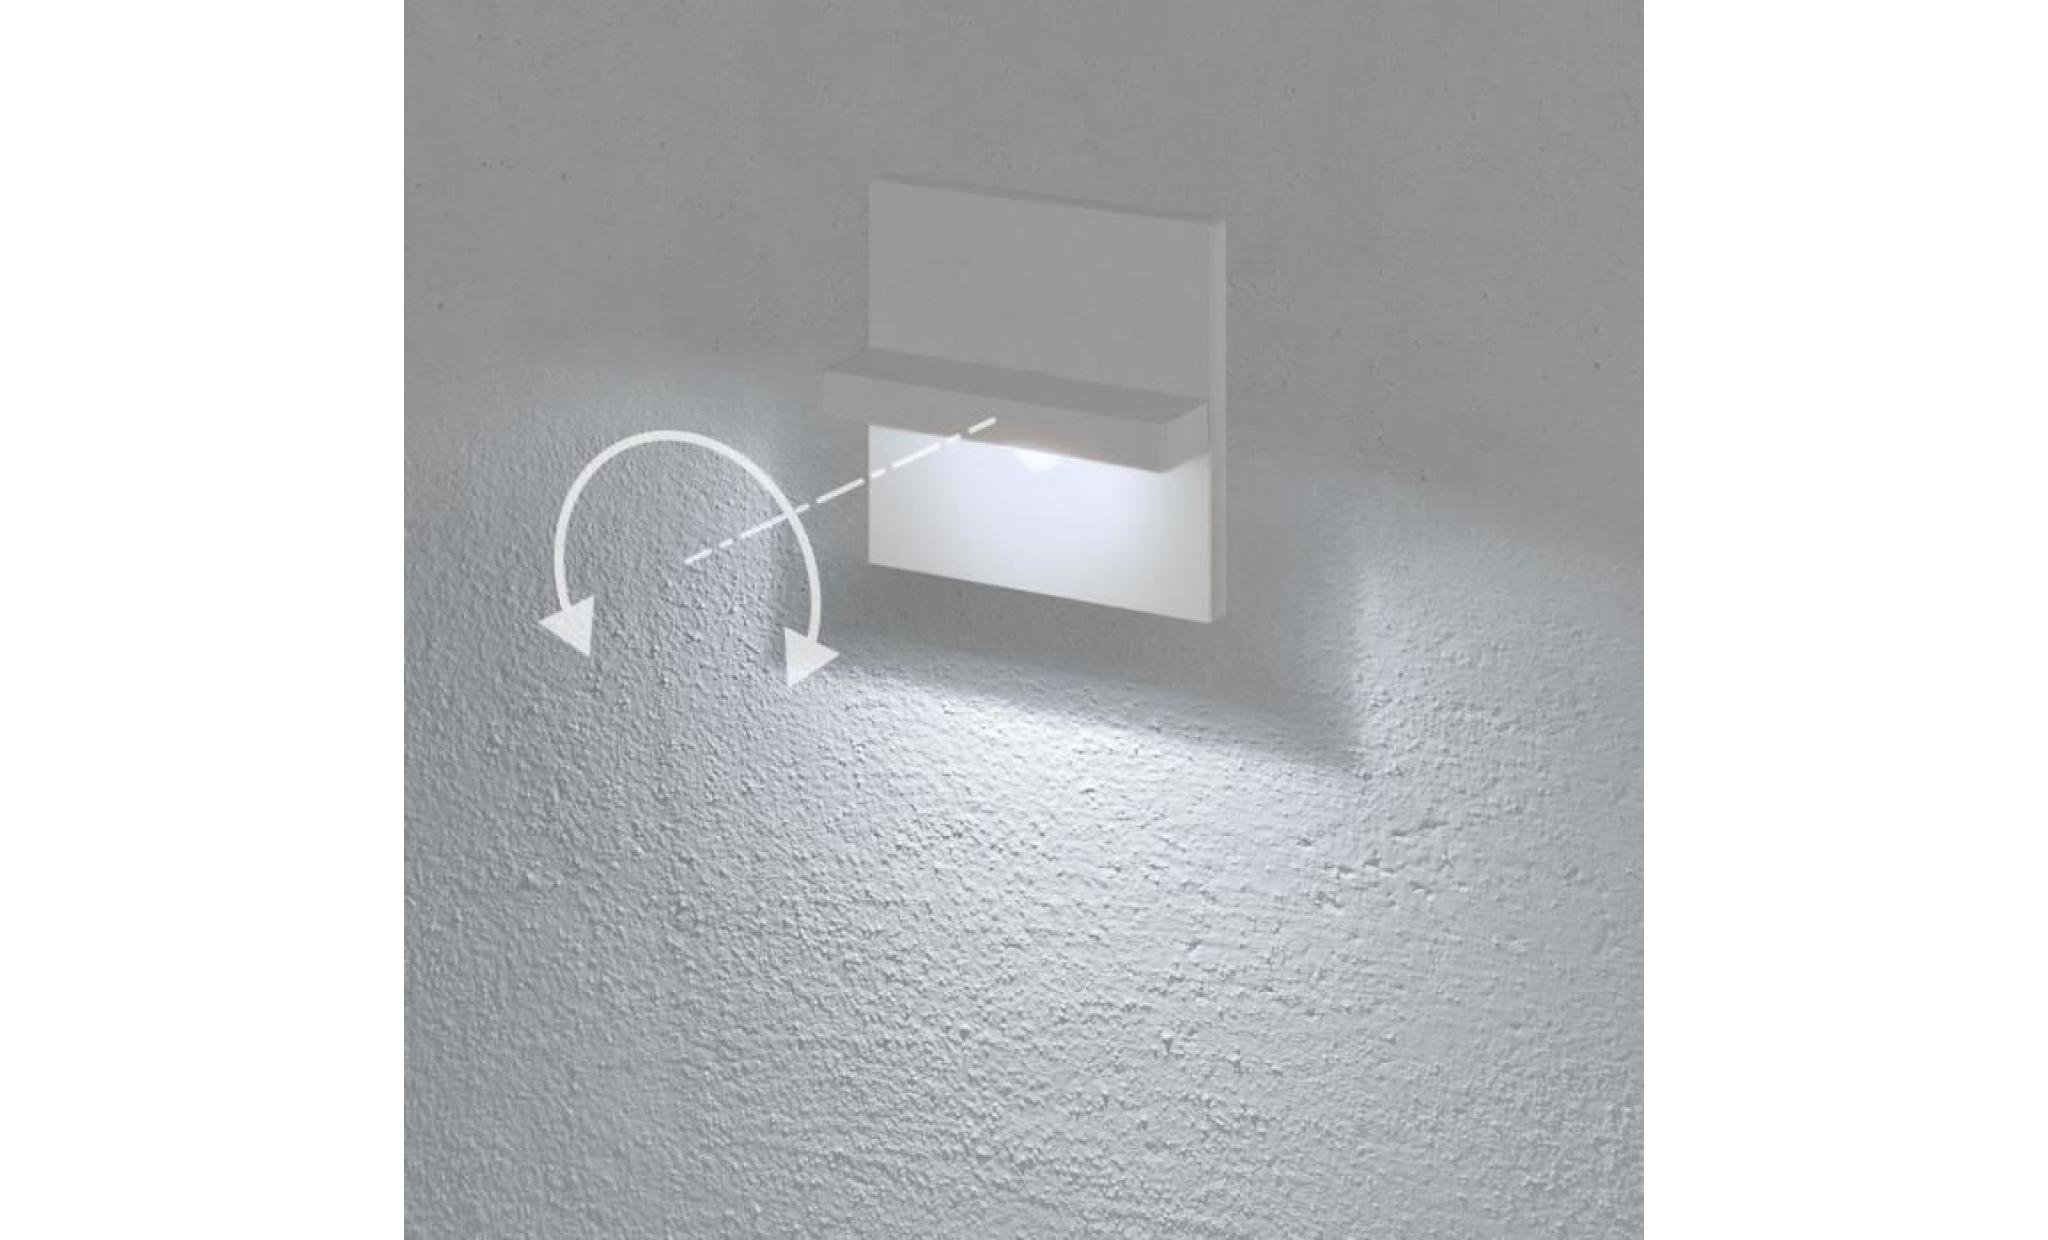 applique à encastrer au mur, led blanc froid, lampe murale 3 watt, couleur blanche, lumière orientable, usage externe